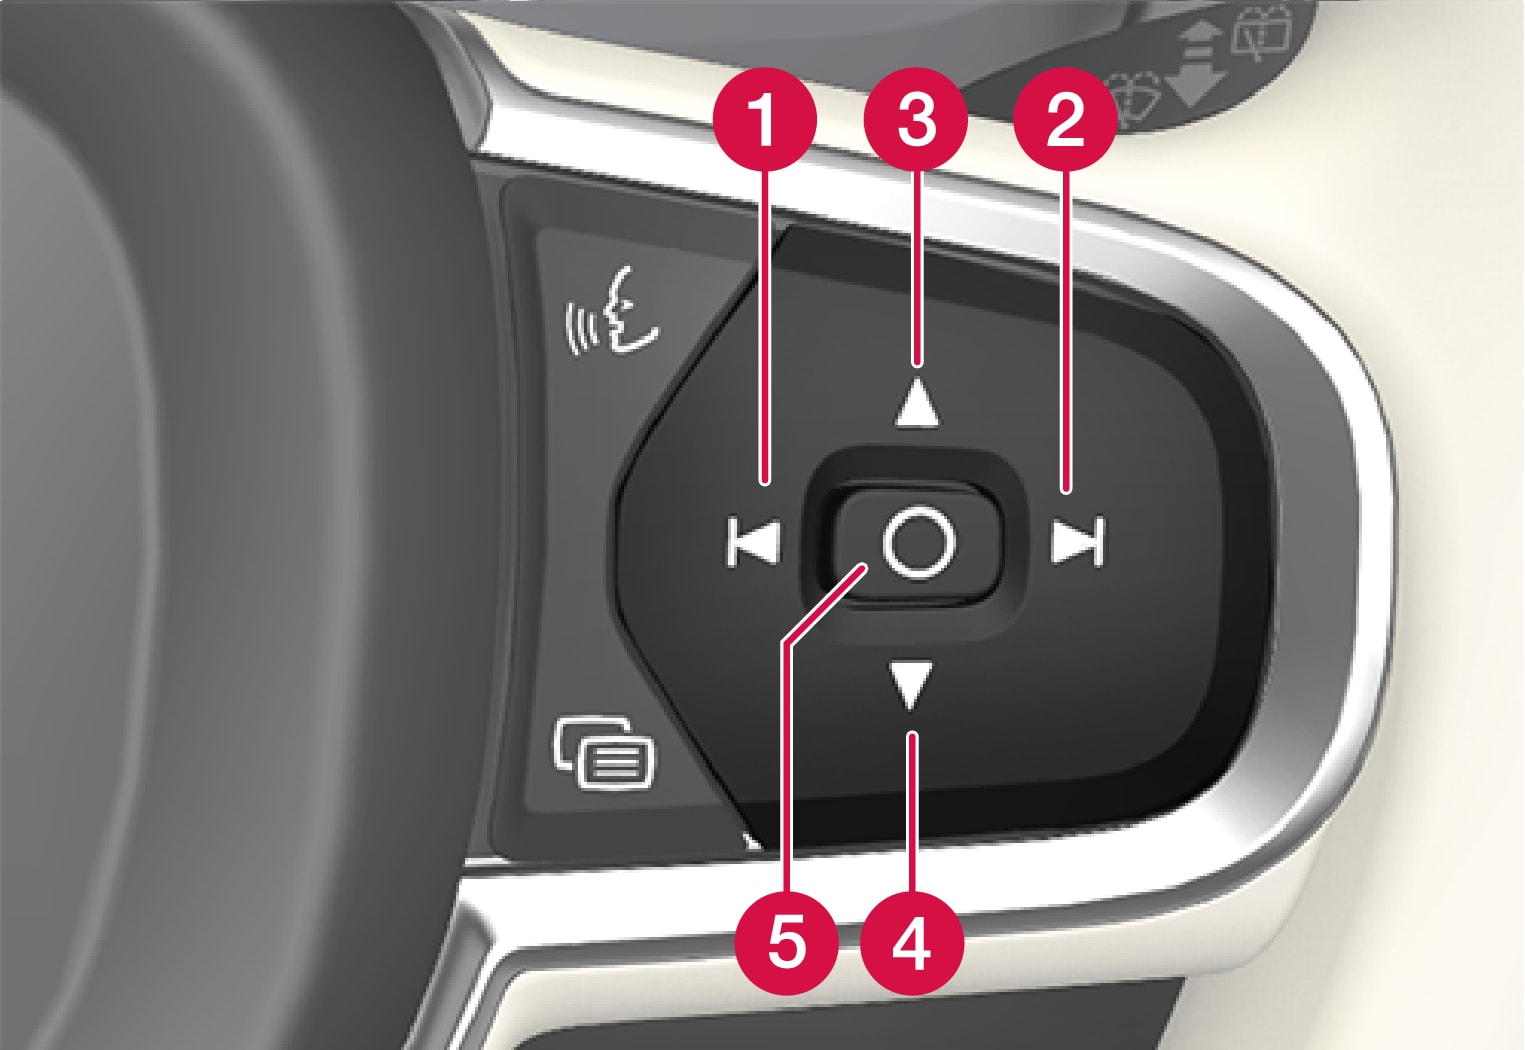 P5-Head Up Display, settings on steering wheel